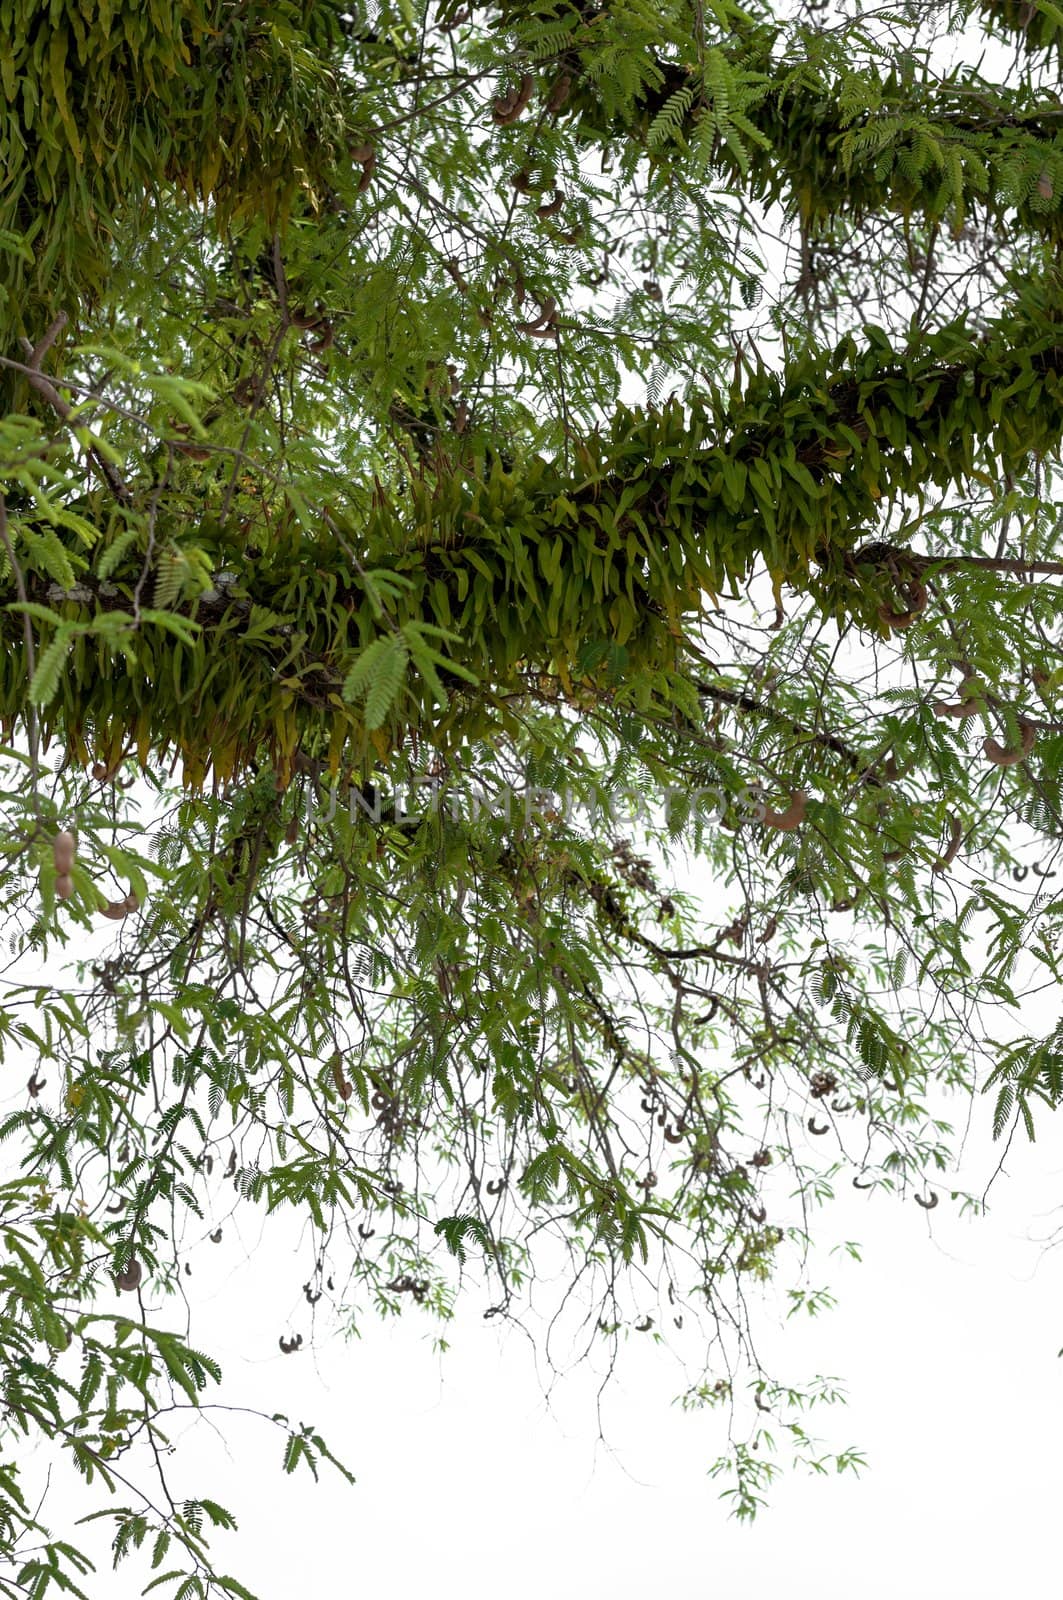 Pyrrosia on big tree,isolate on white background.